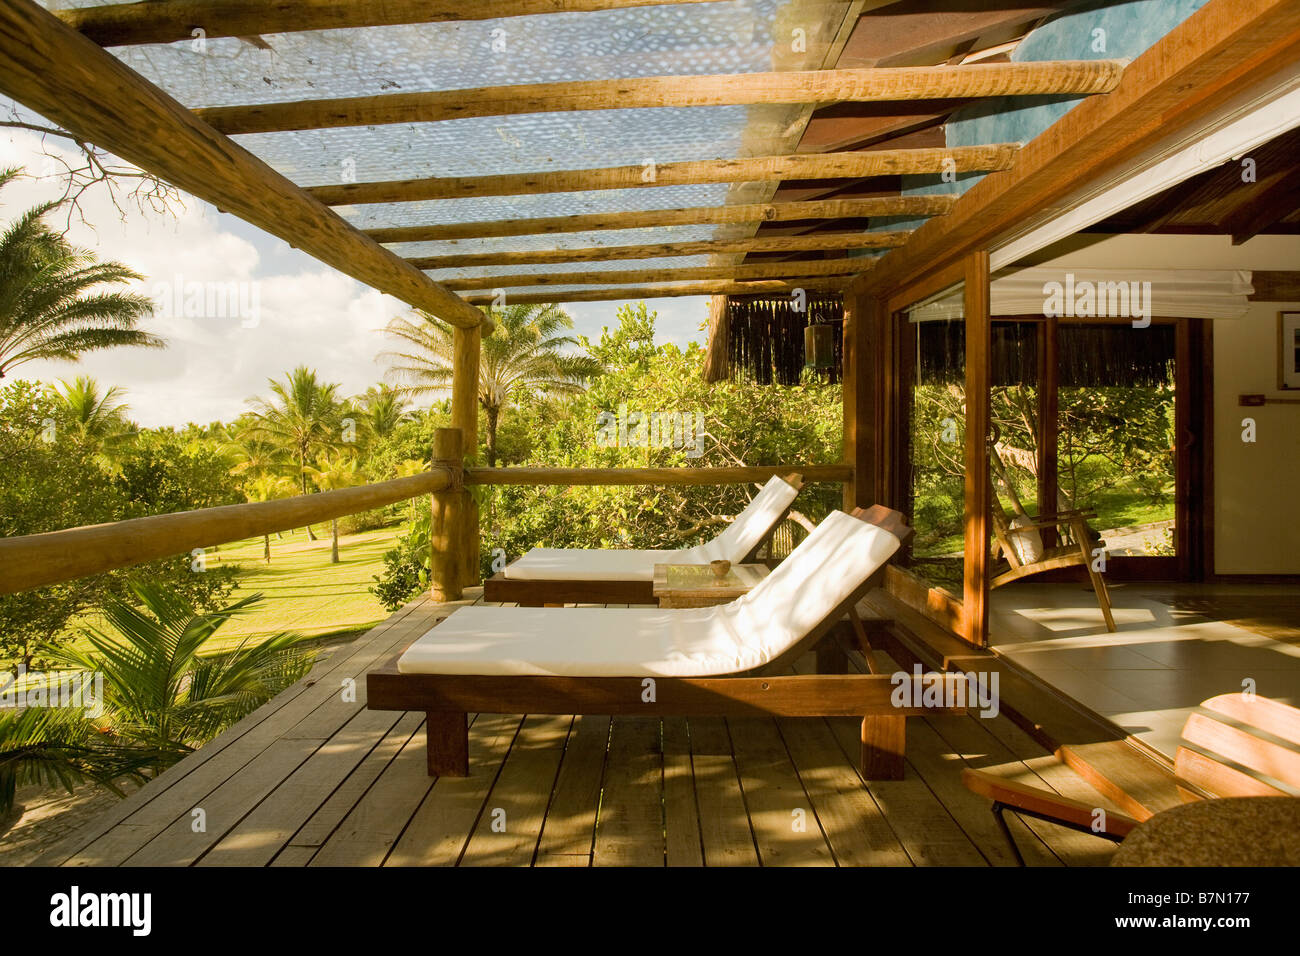 Cuscini bianchi su lettini in legno sulla veranda della moderna casa sulla spiaggia in Brasile Foto Stock